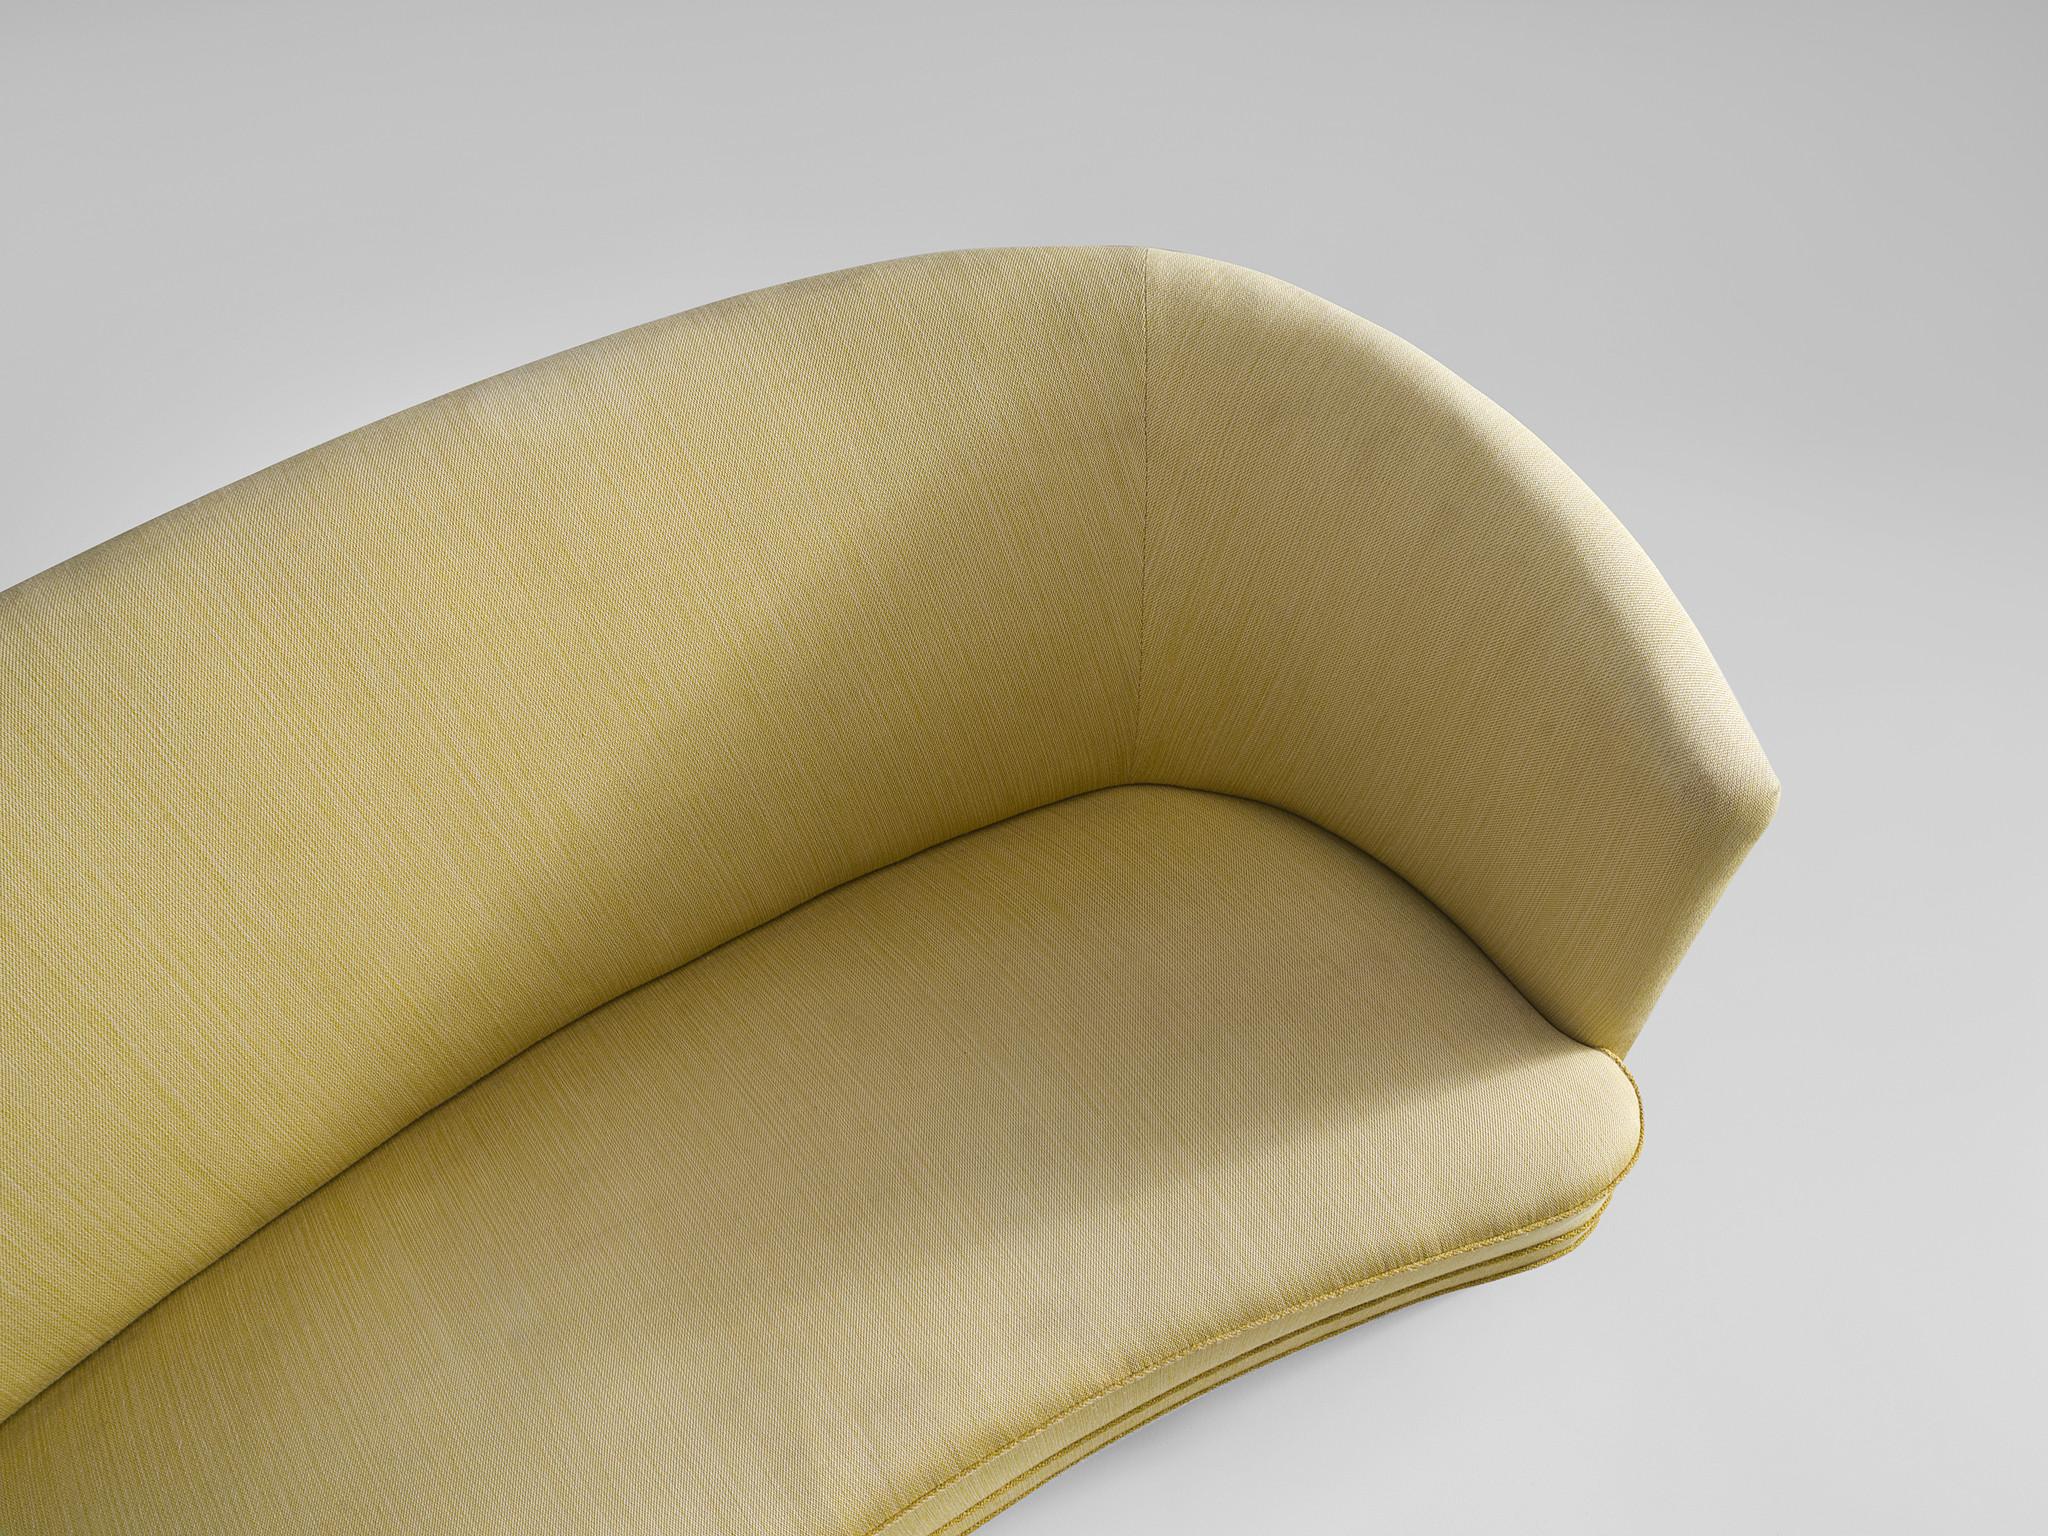 Danish Art Deco 'Banana' Sofa in Yellow Upholstery 2